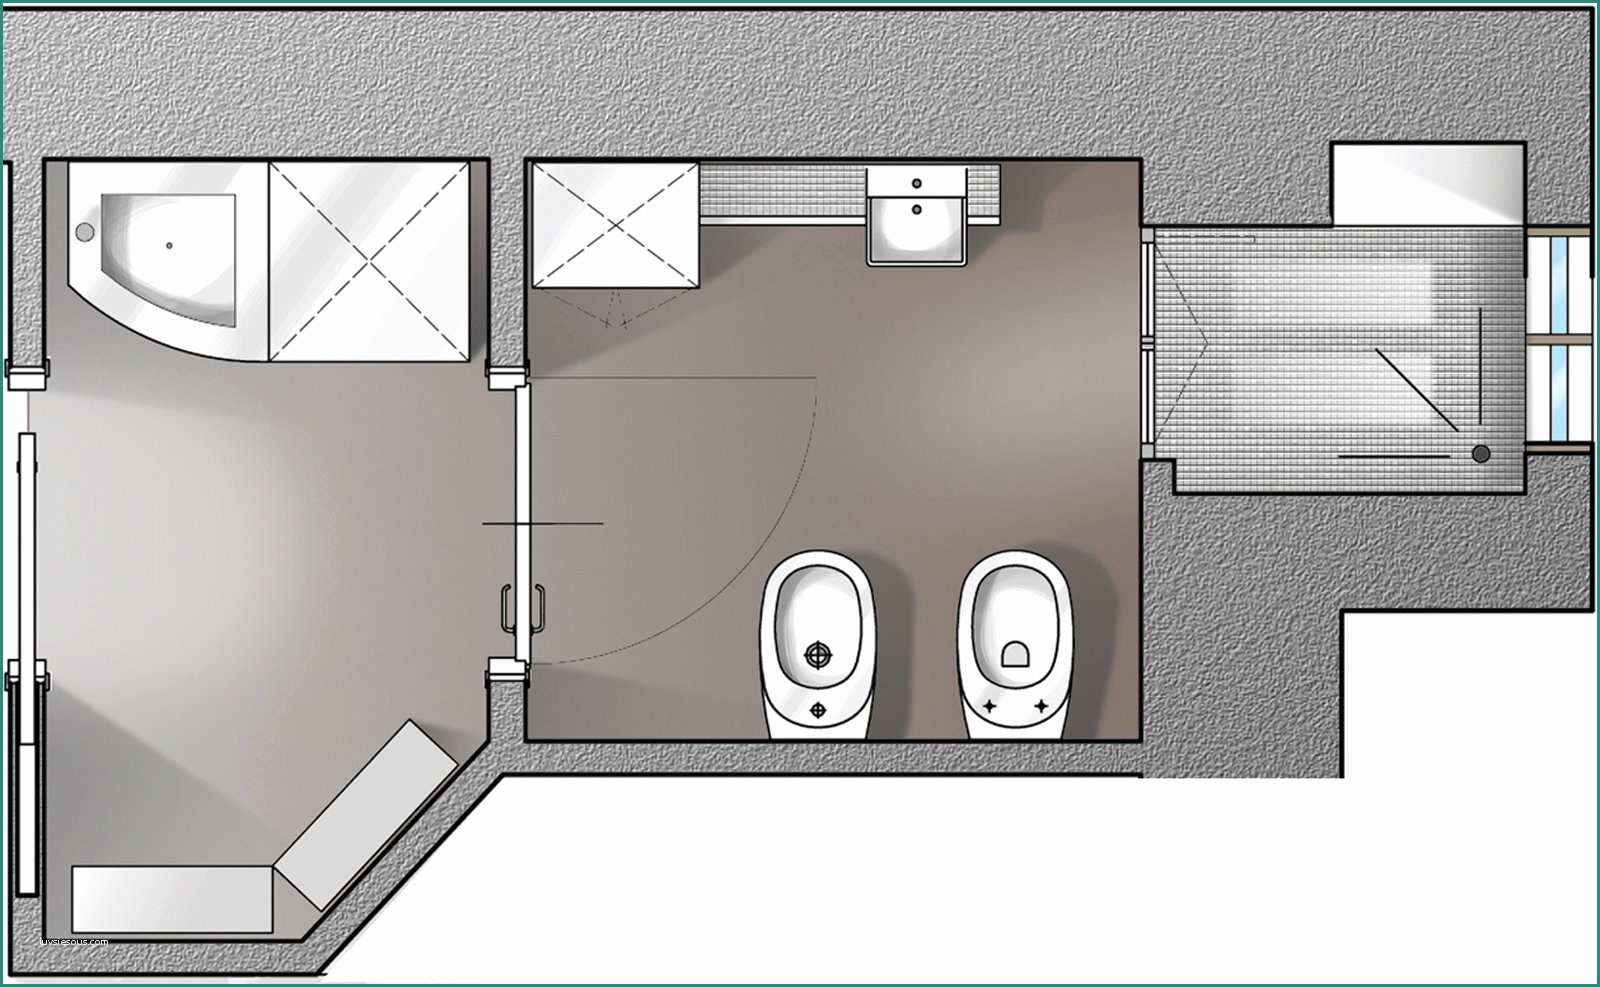 Dimensioni Minime Vano ascensore E Il Bagno A norma Cose Di Casa